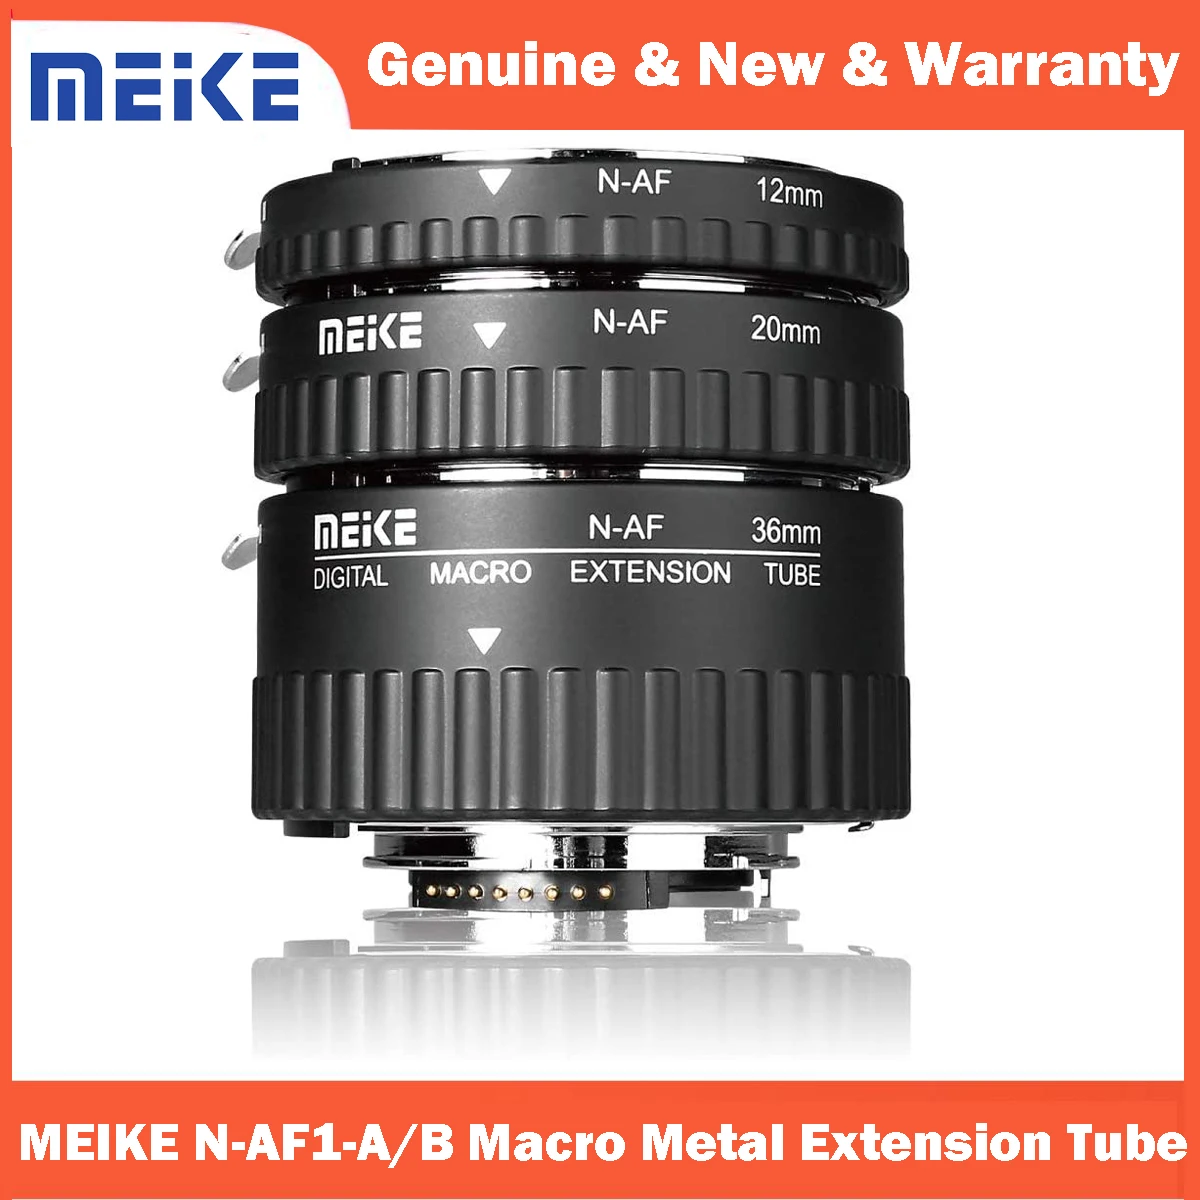 MEIKE N-AF1-A ماكرو المعادن تمديد أنبوب محول الإلكترونية جبل السيارات فوكس لنيكون DSLR كاميرا D80 D90 D300 D300S D800 D3100